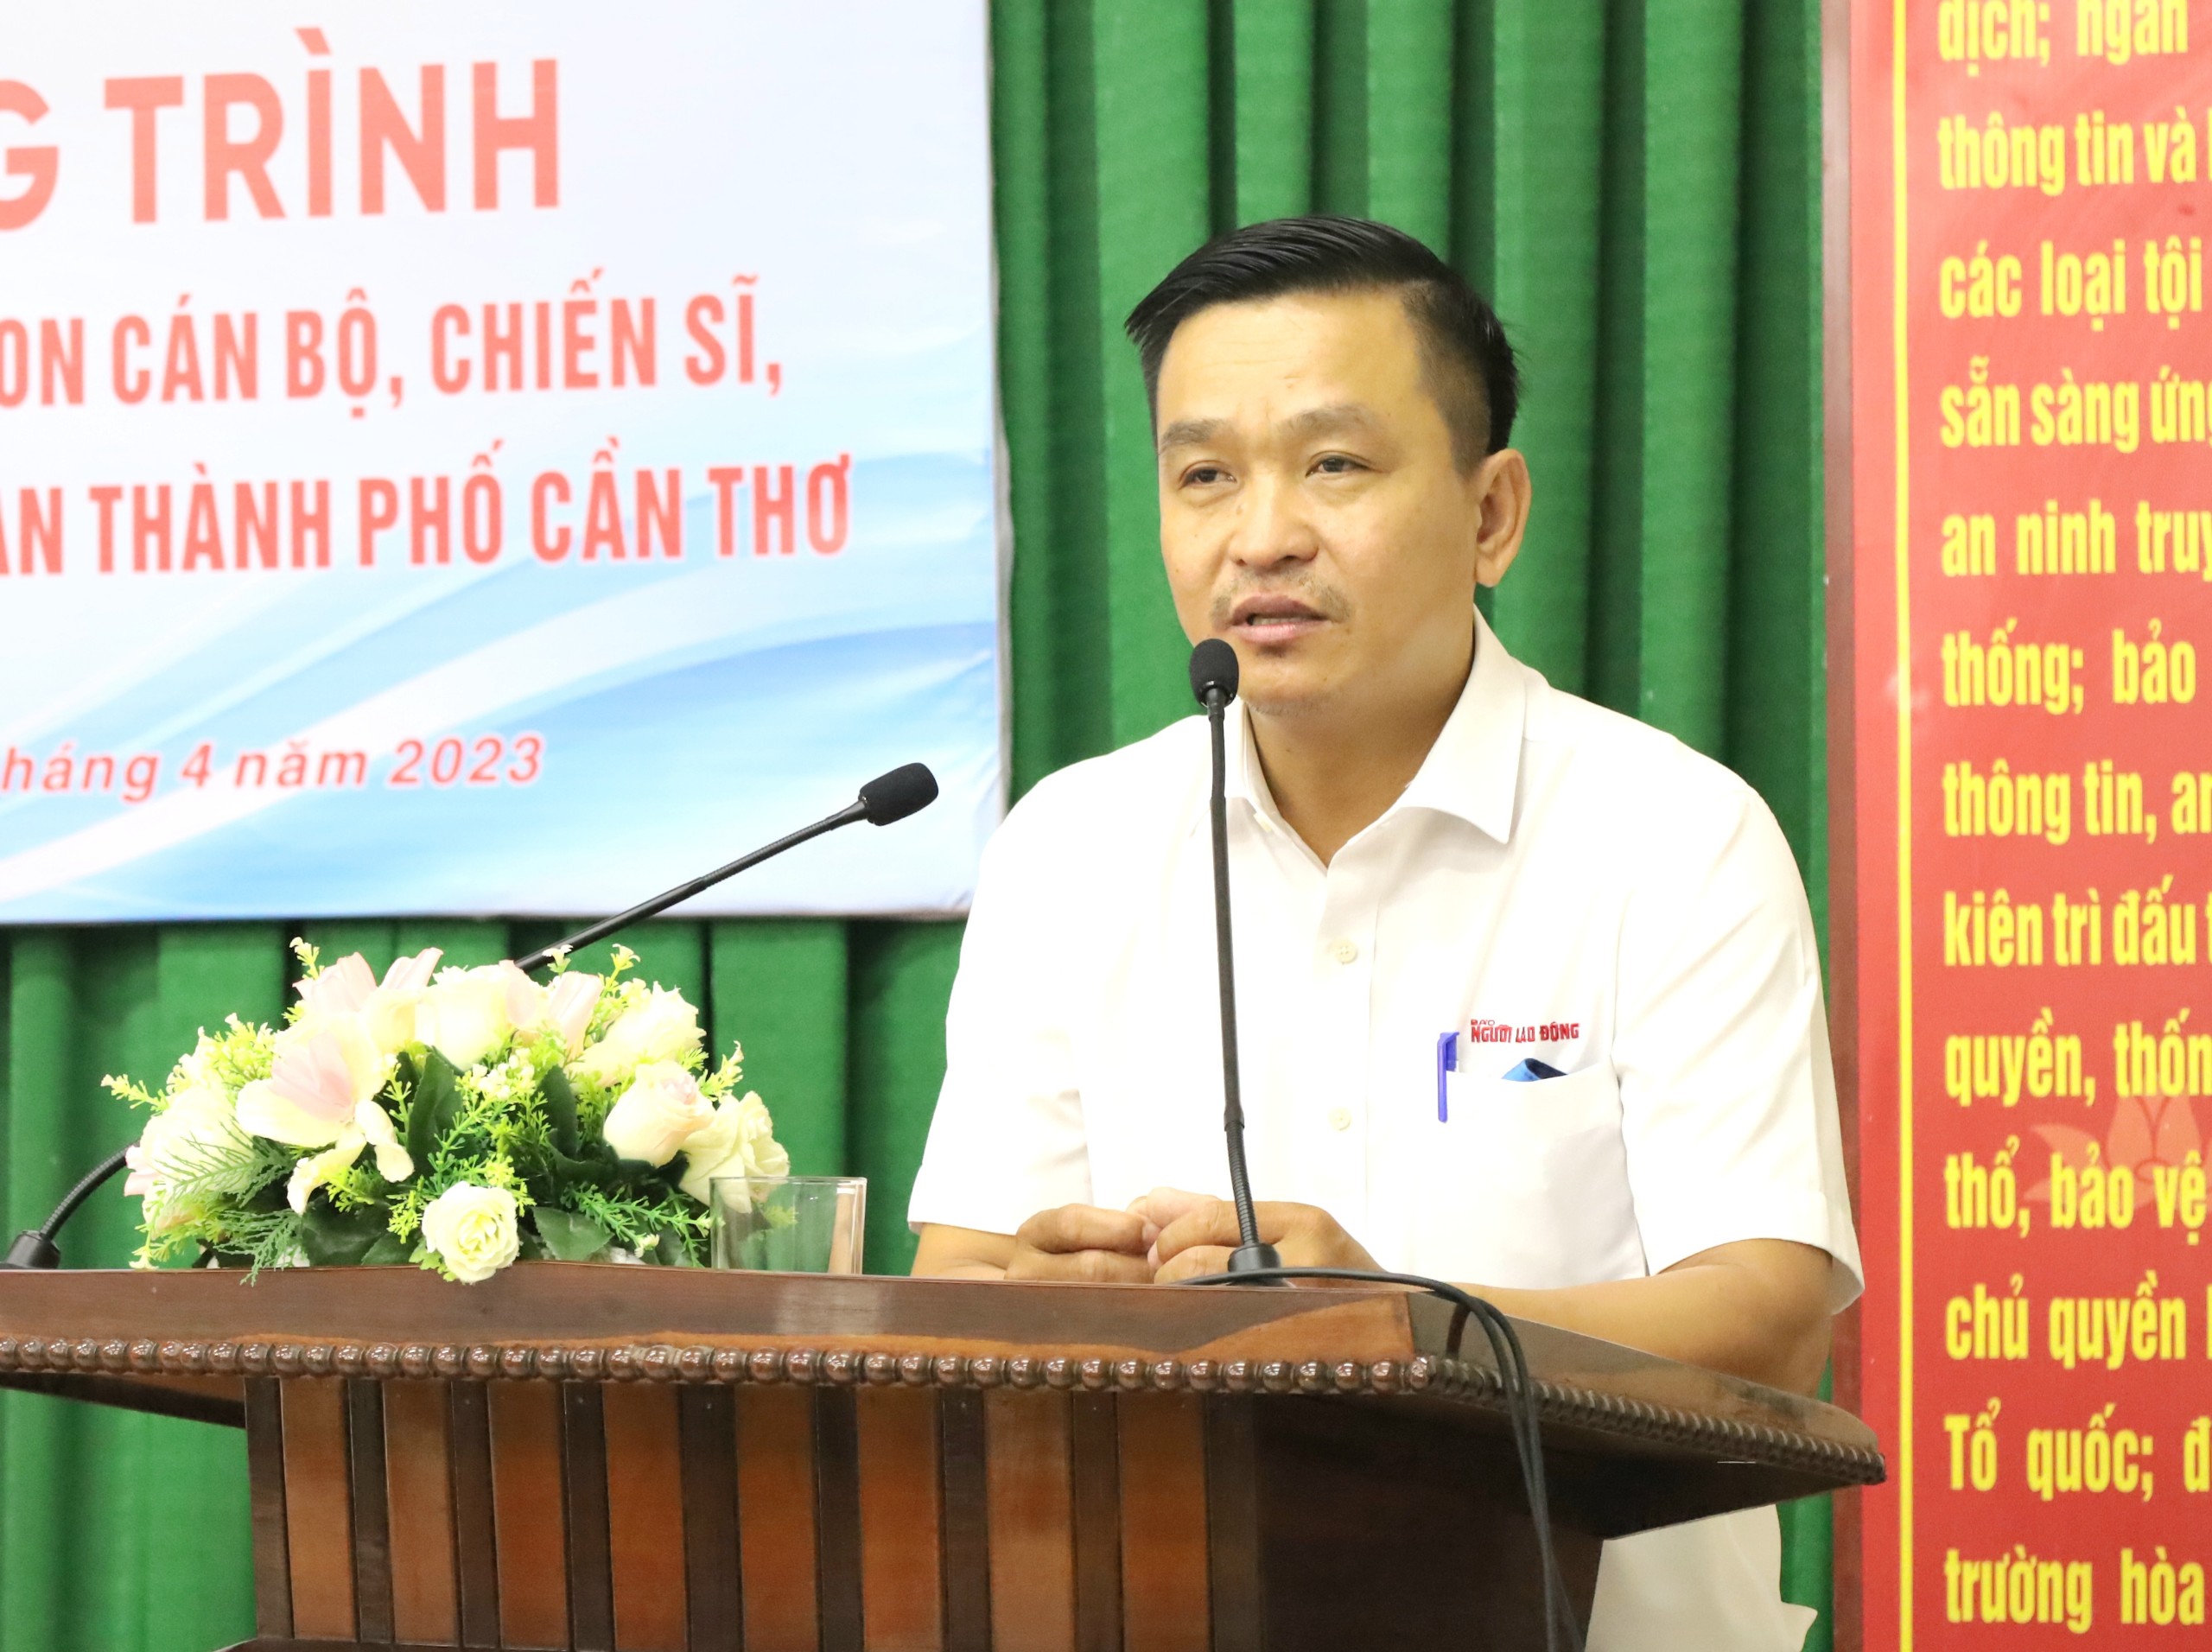 Ông Trần Công Tuấn - Phụ trách Văn phòng đại diện Báo Người lao động khu vực ĐBSCL phát biểu tại chương trình.